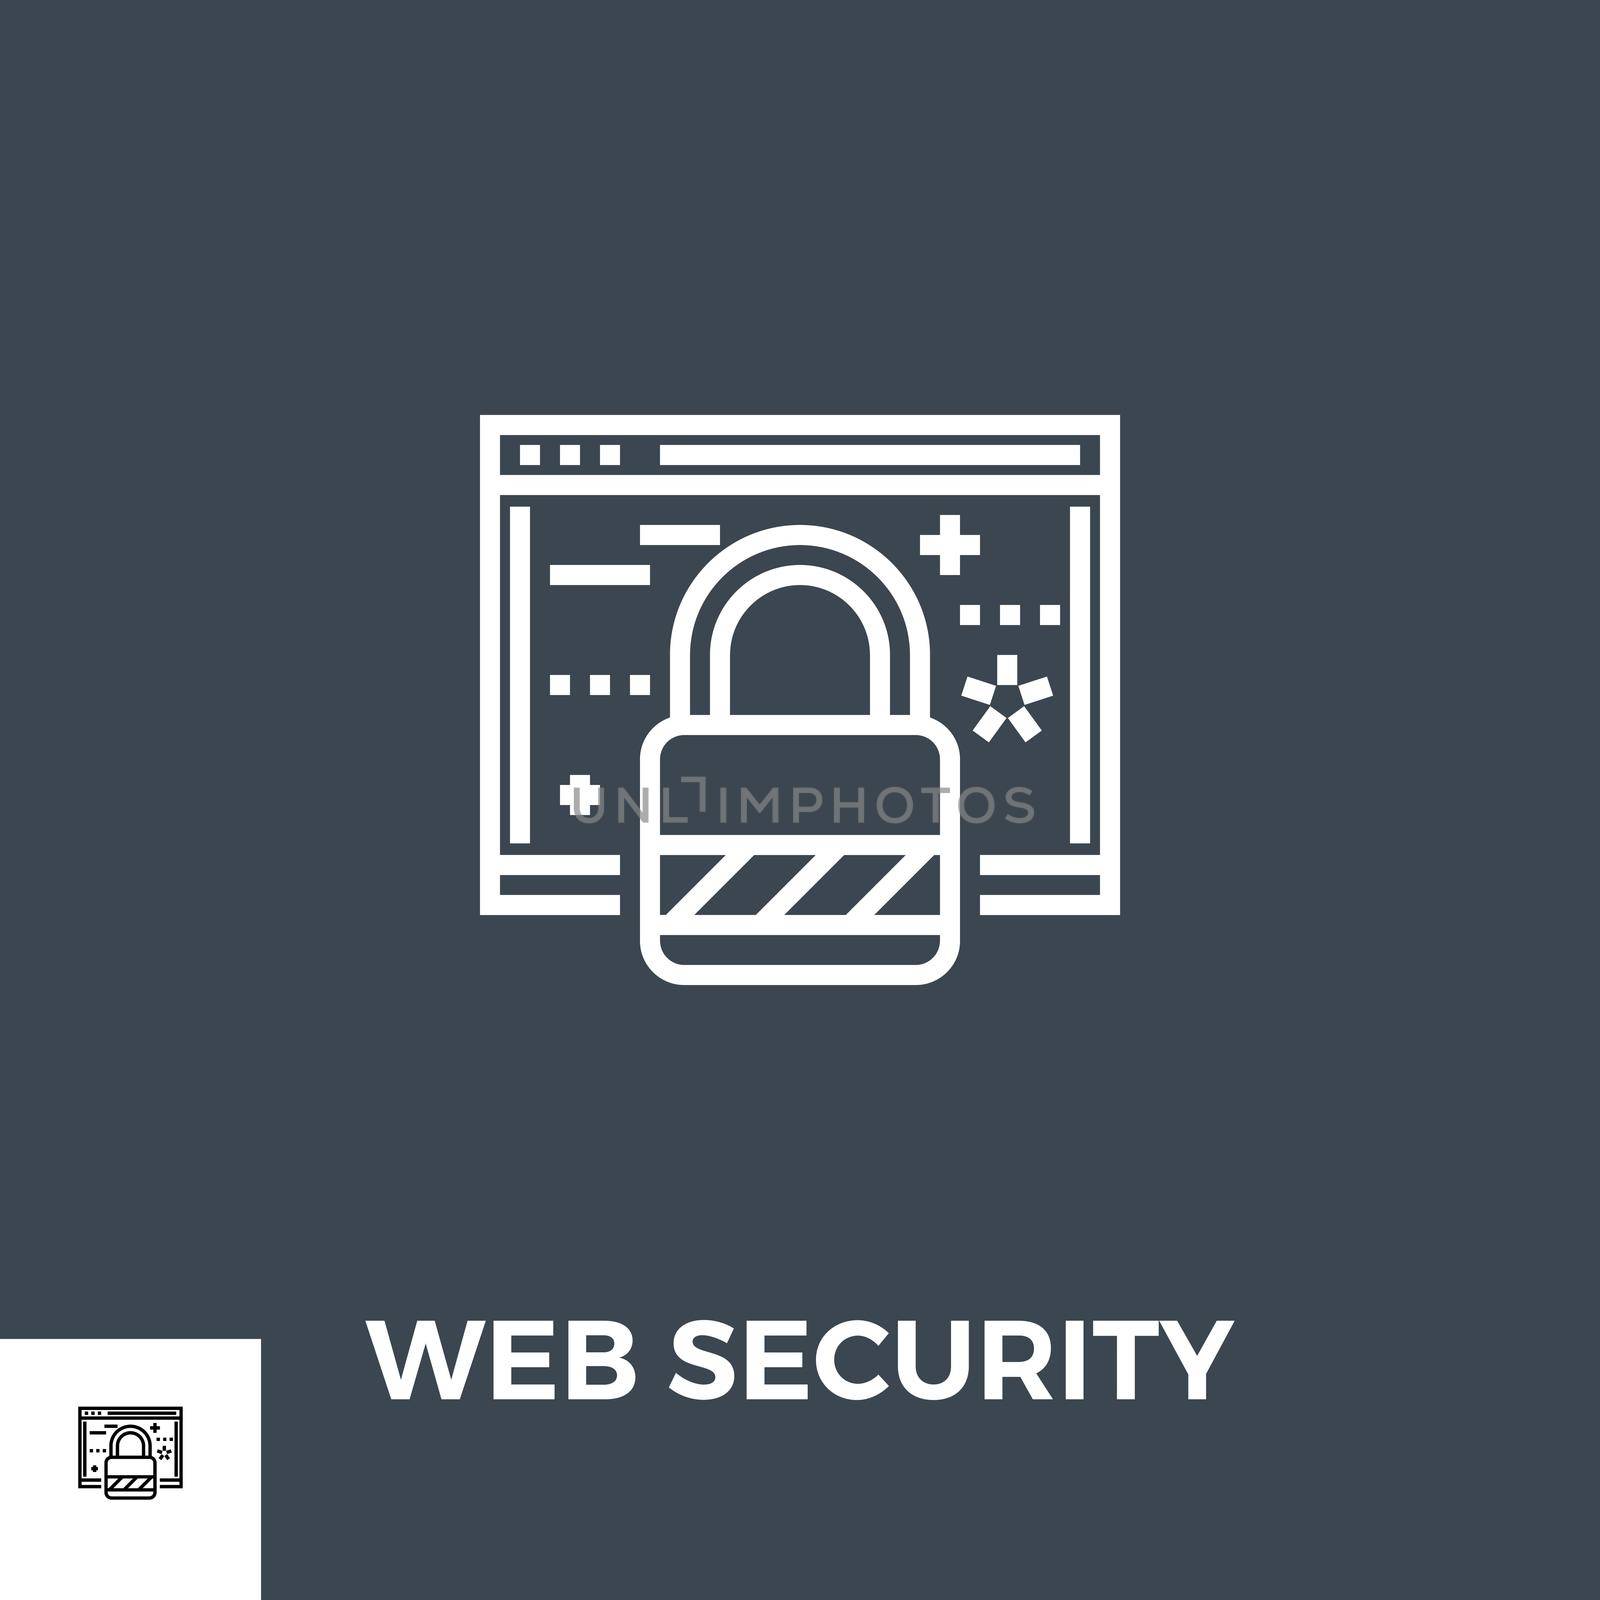 Web Security Line Icon by smoki